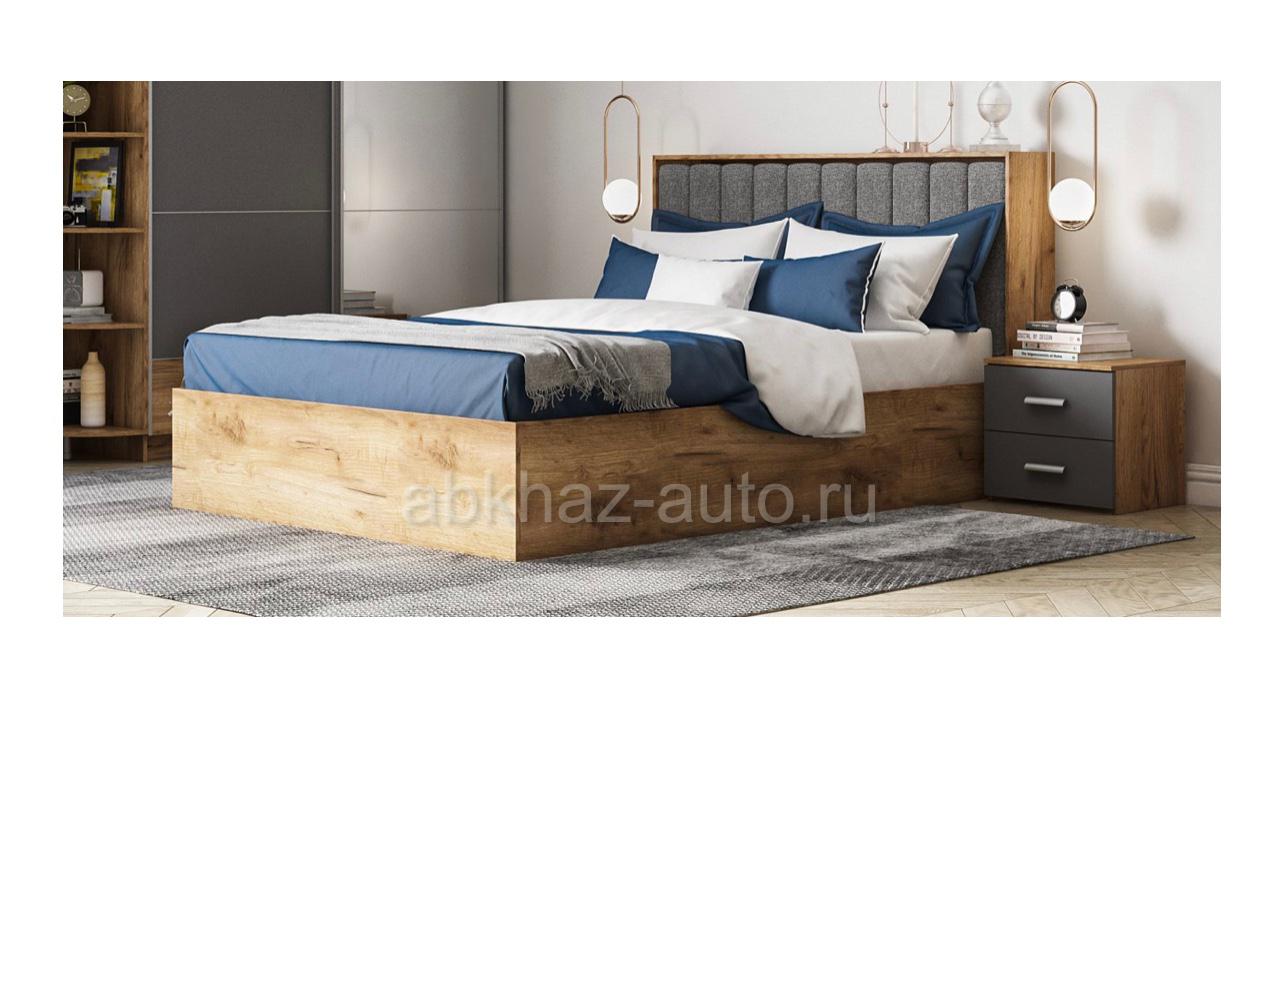 Кровать Lux 226x169 СП. Место 200х160